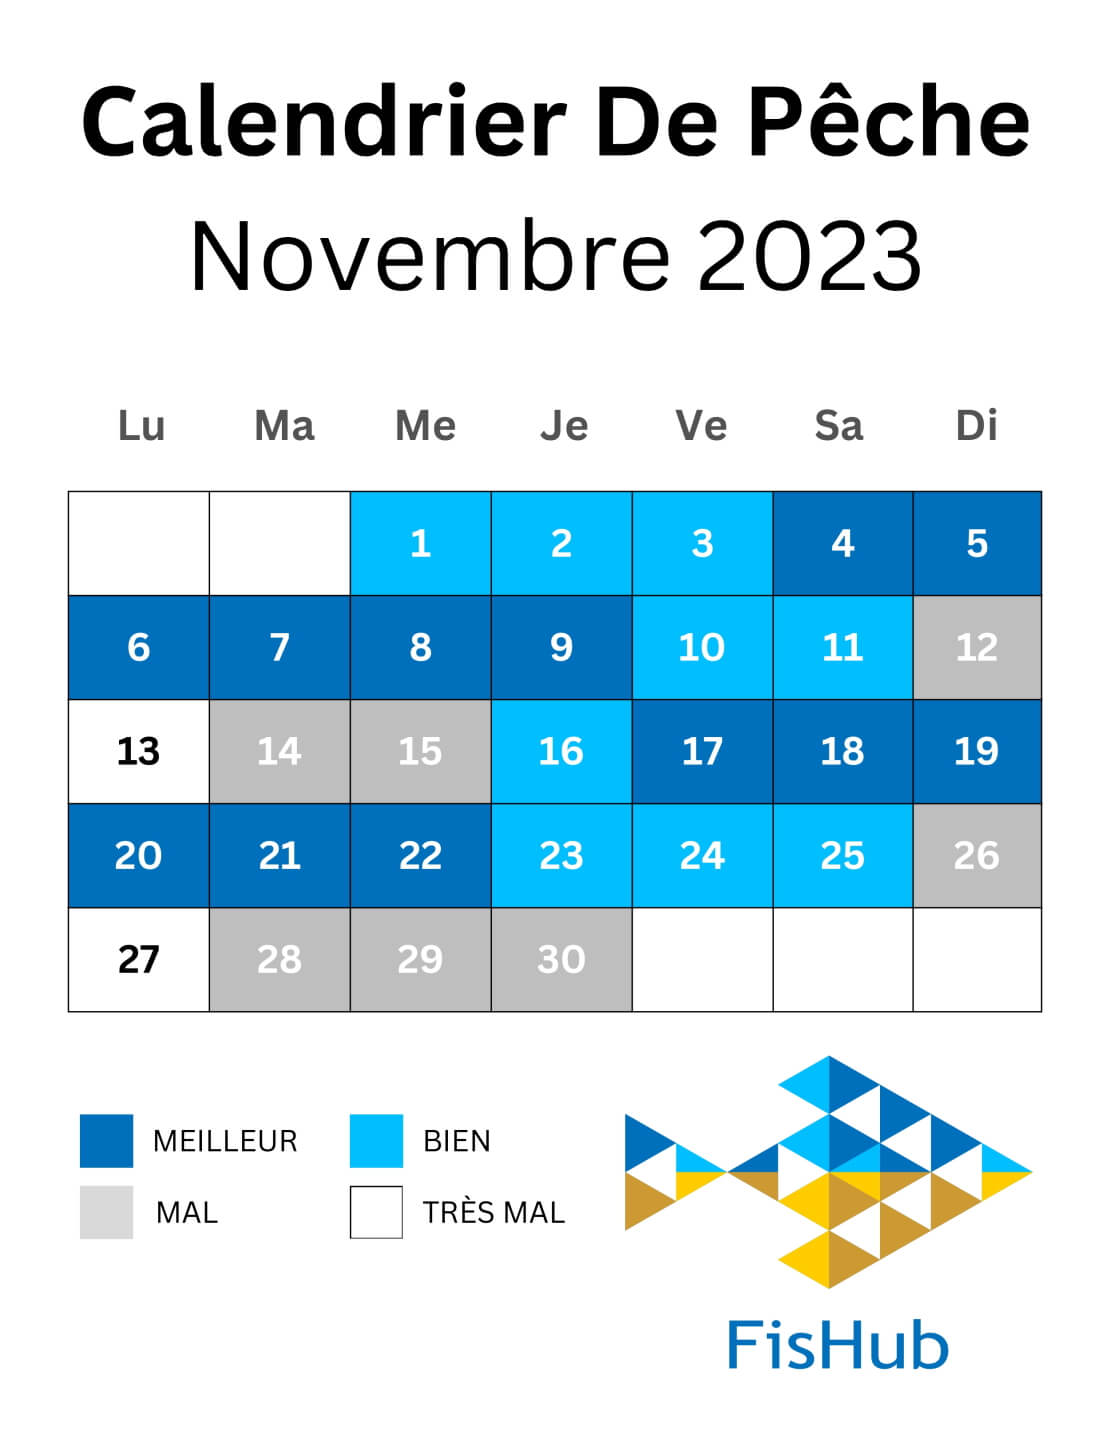 Calendrier des pêcheurs pour novembre 2023